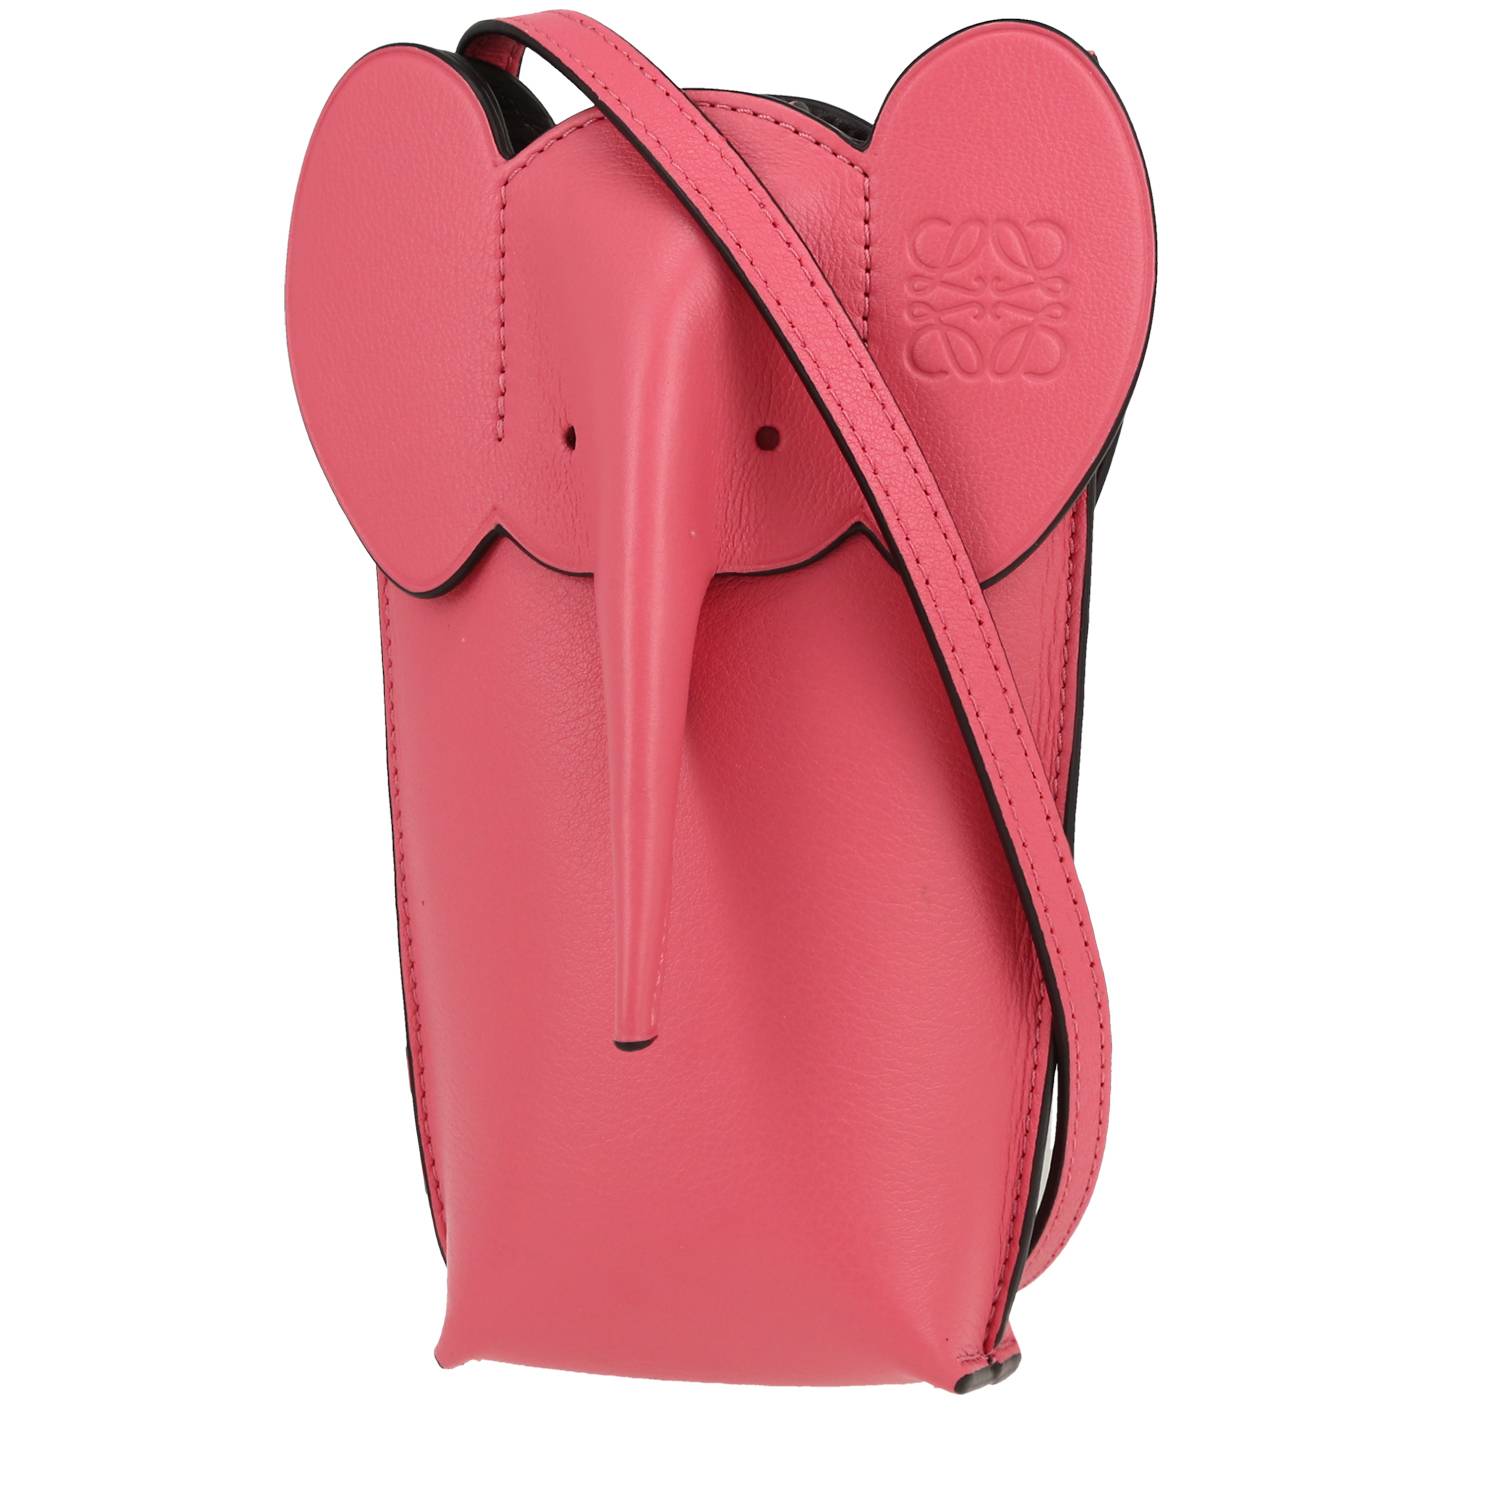 Elephant Pocket Shoulder Bag In Pink Leather